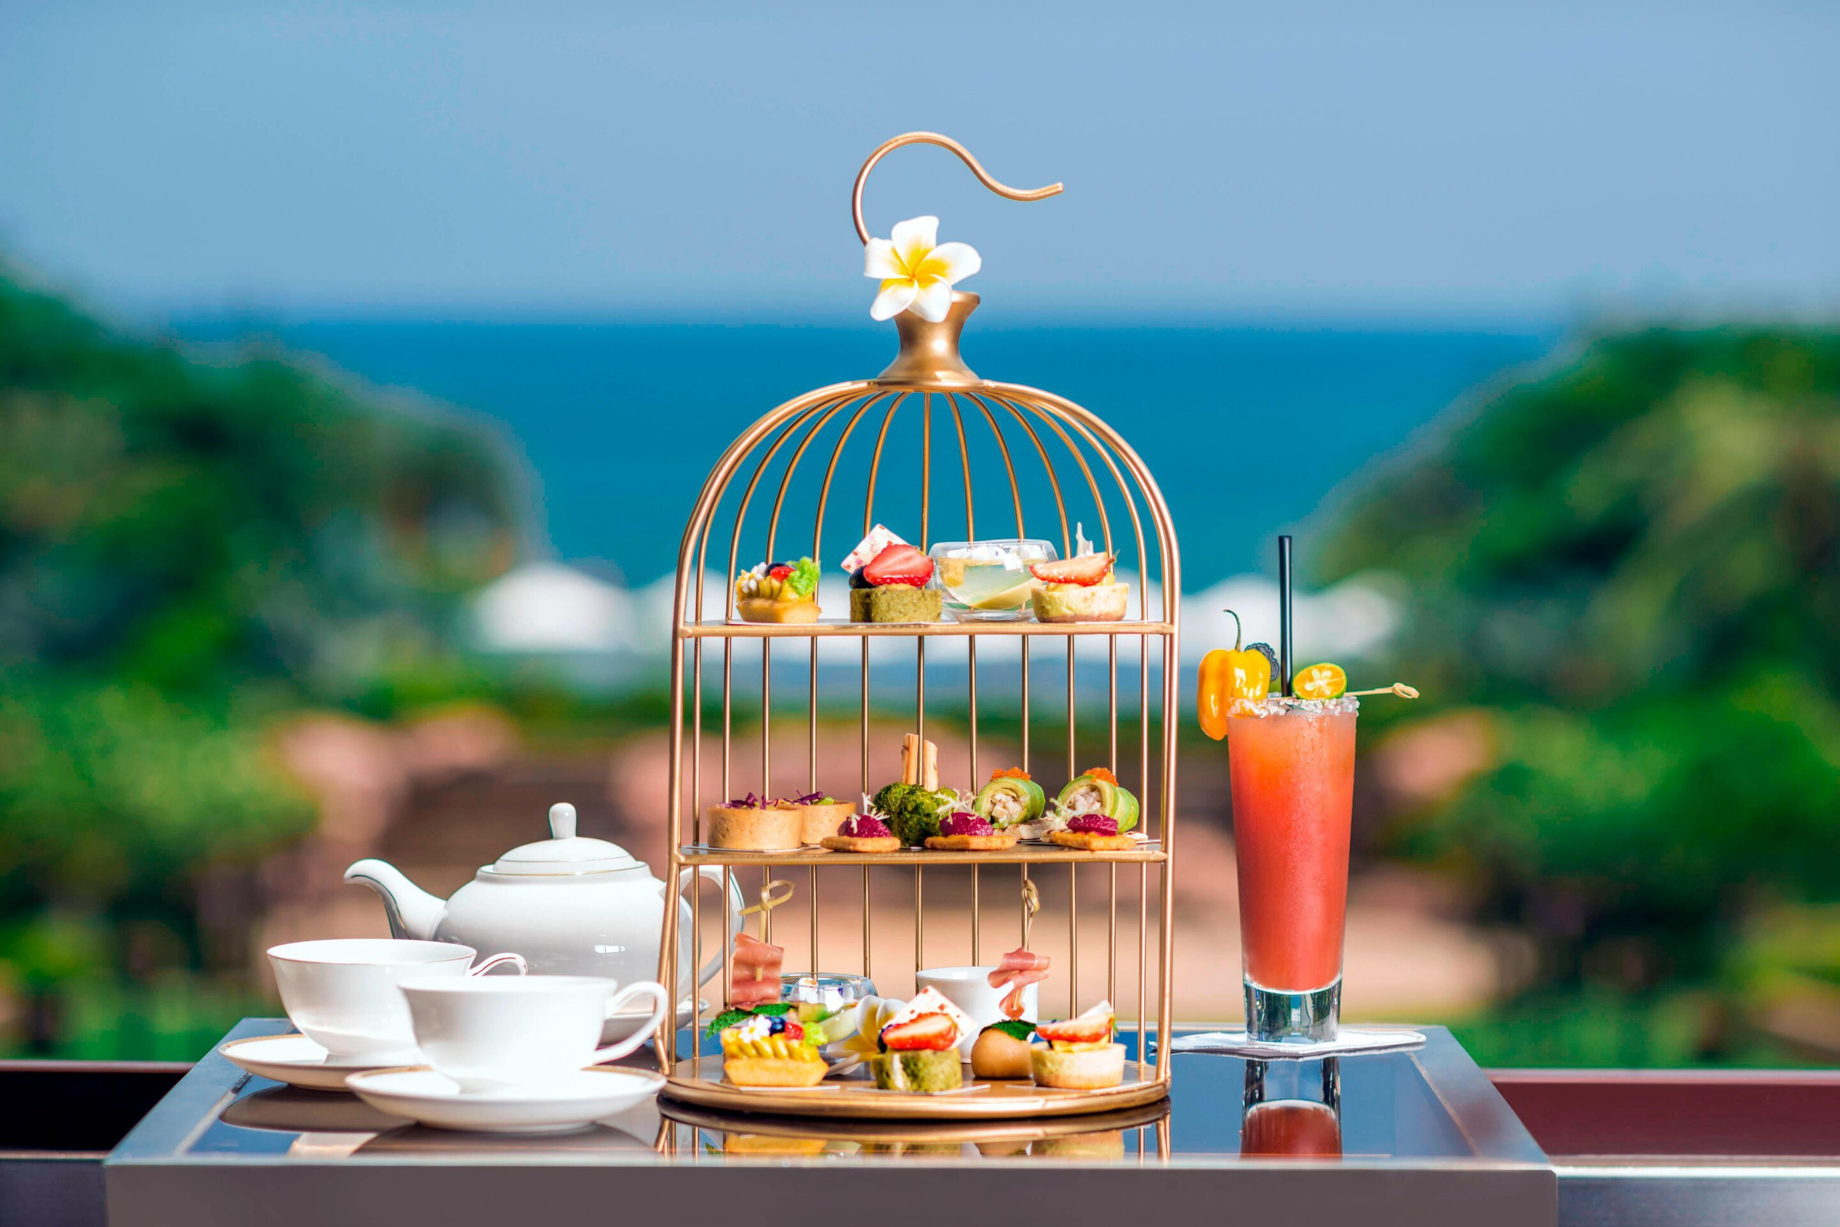 The St. Regis Sanya Yalong Bay Resort – Hainan, China – Afternoon Tea